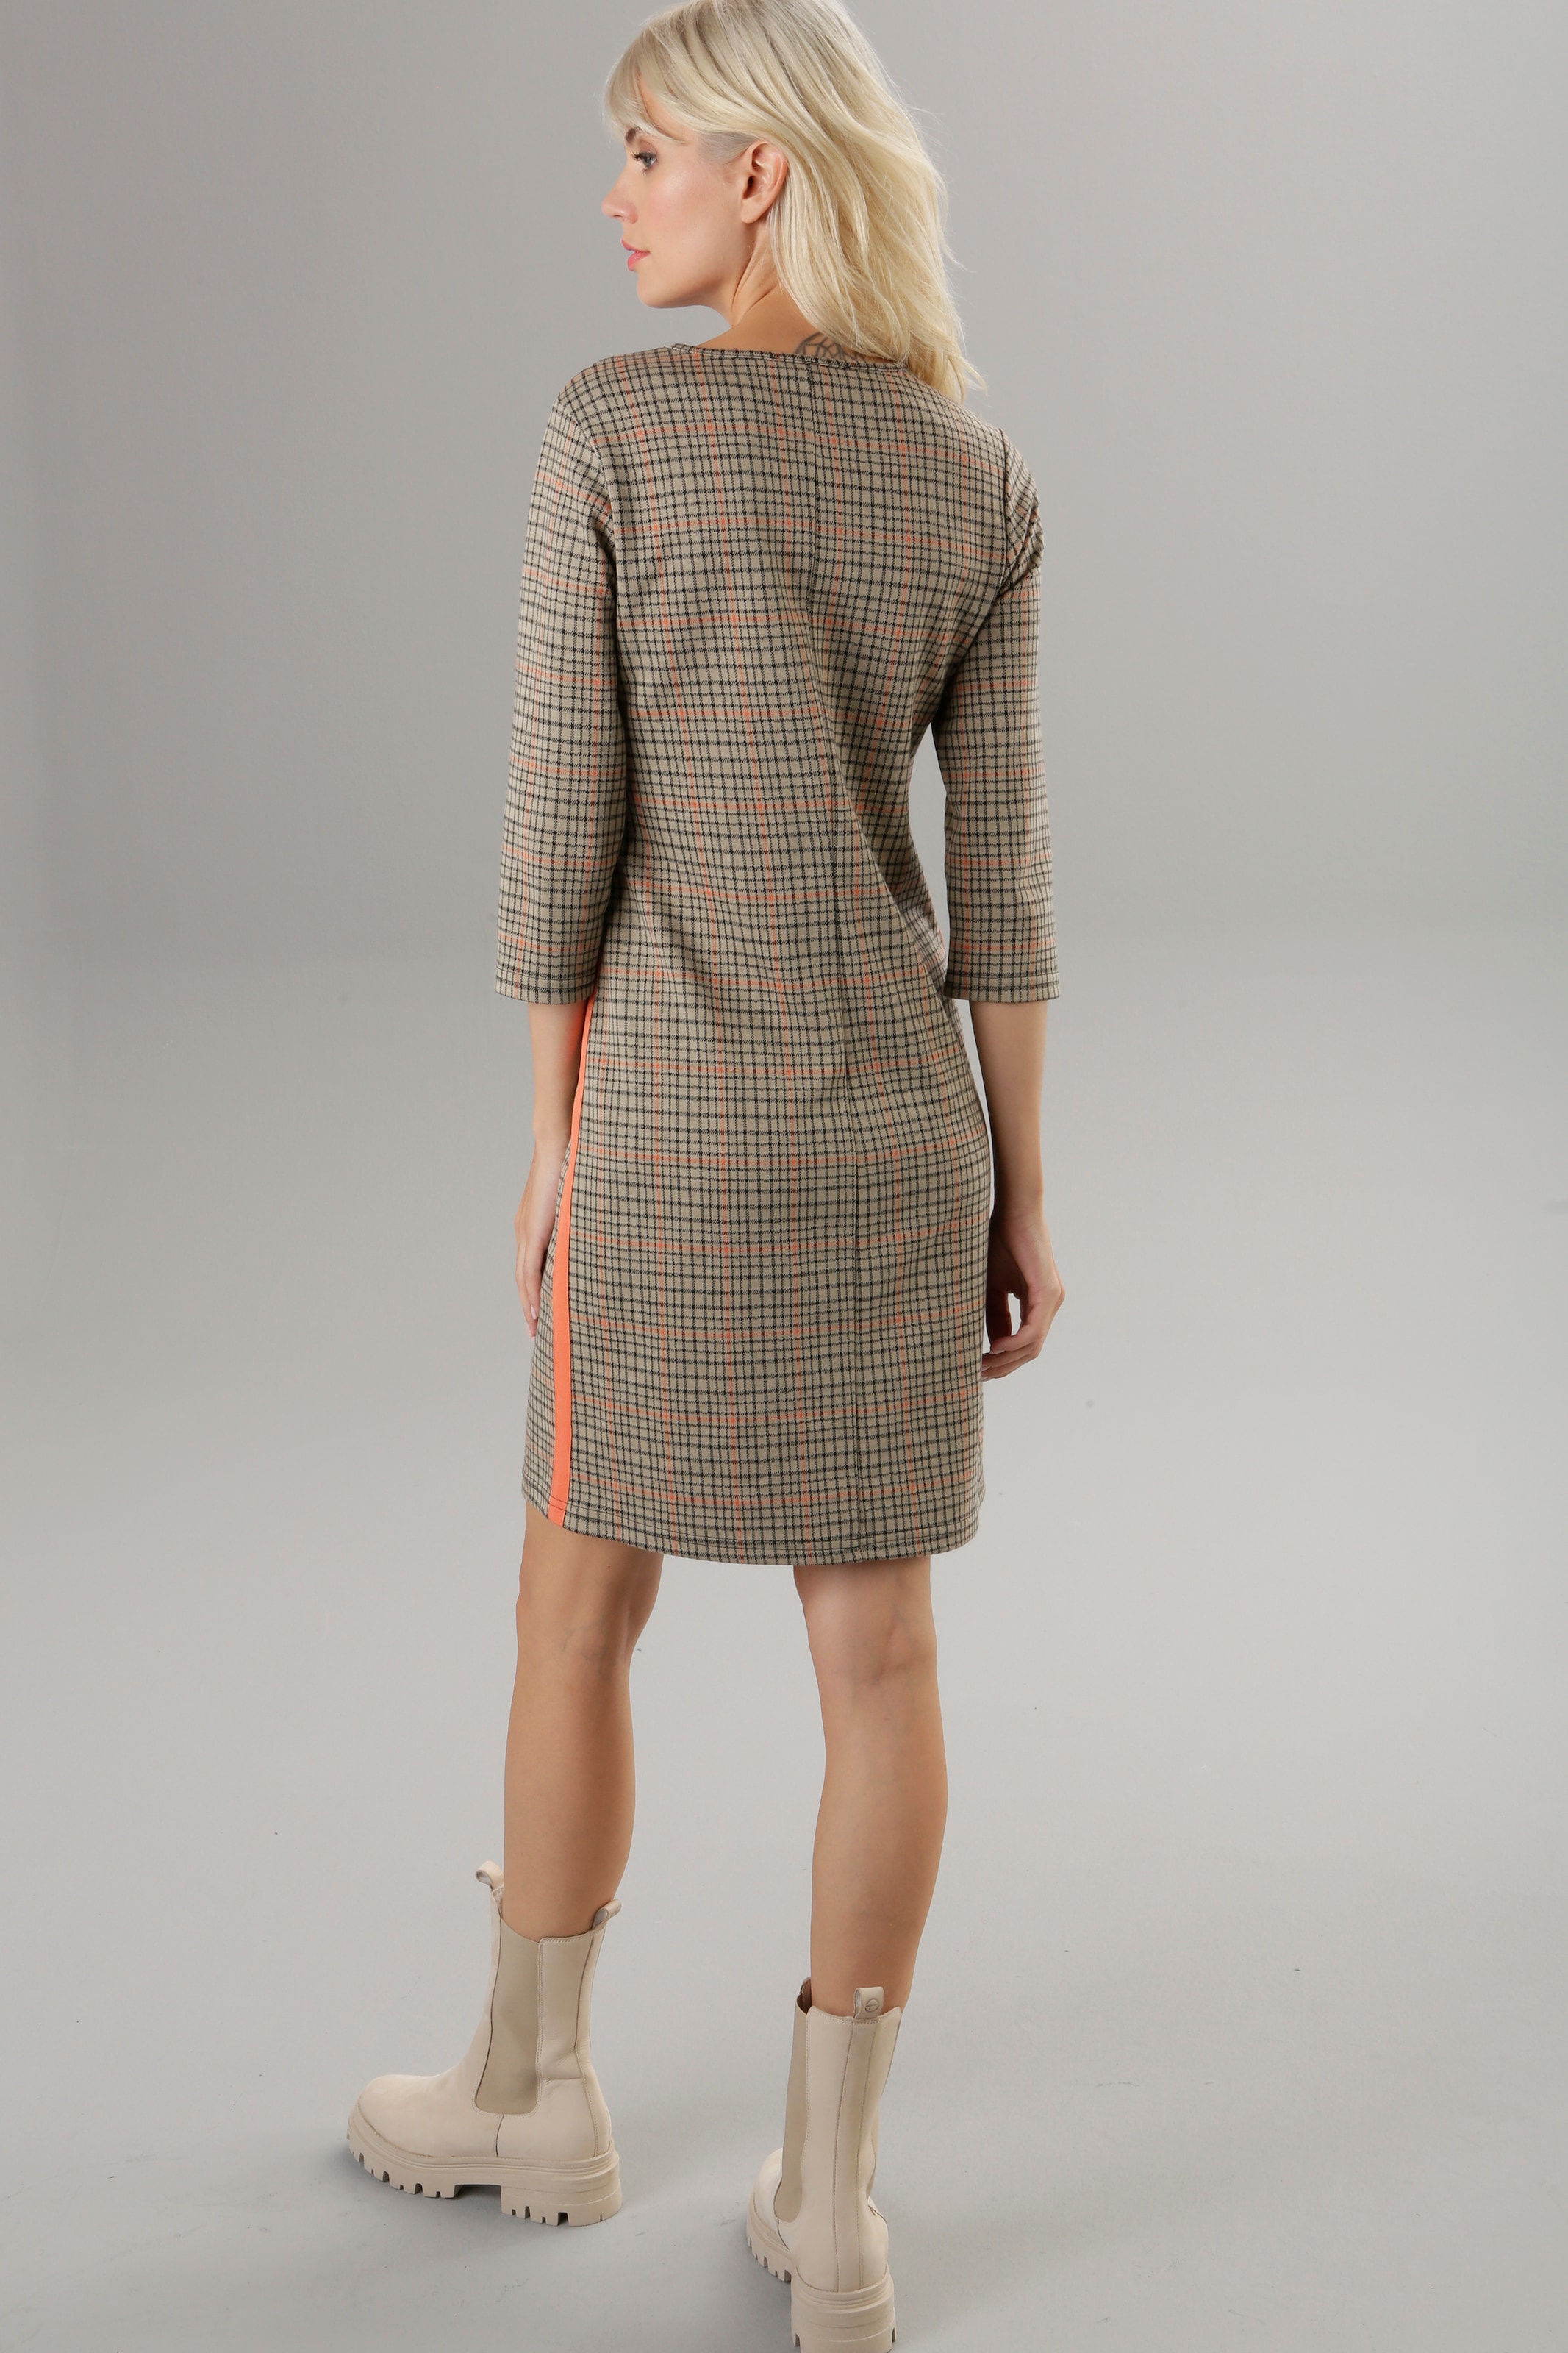 Aniston SELECTED Jerseykleid, mit kaufen orangefarbenen Zierbändern